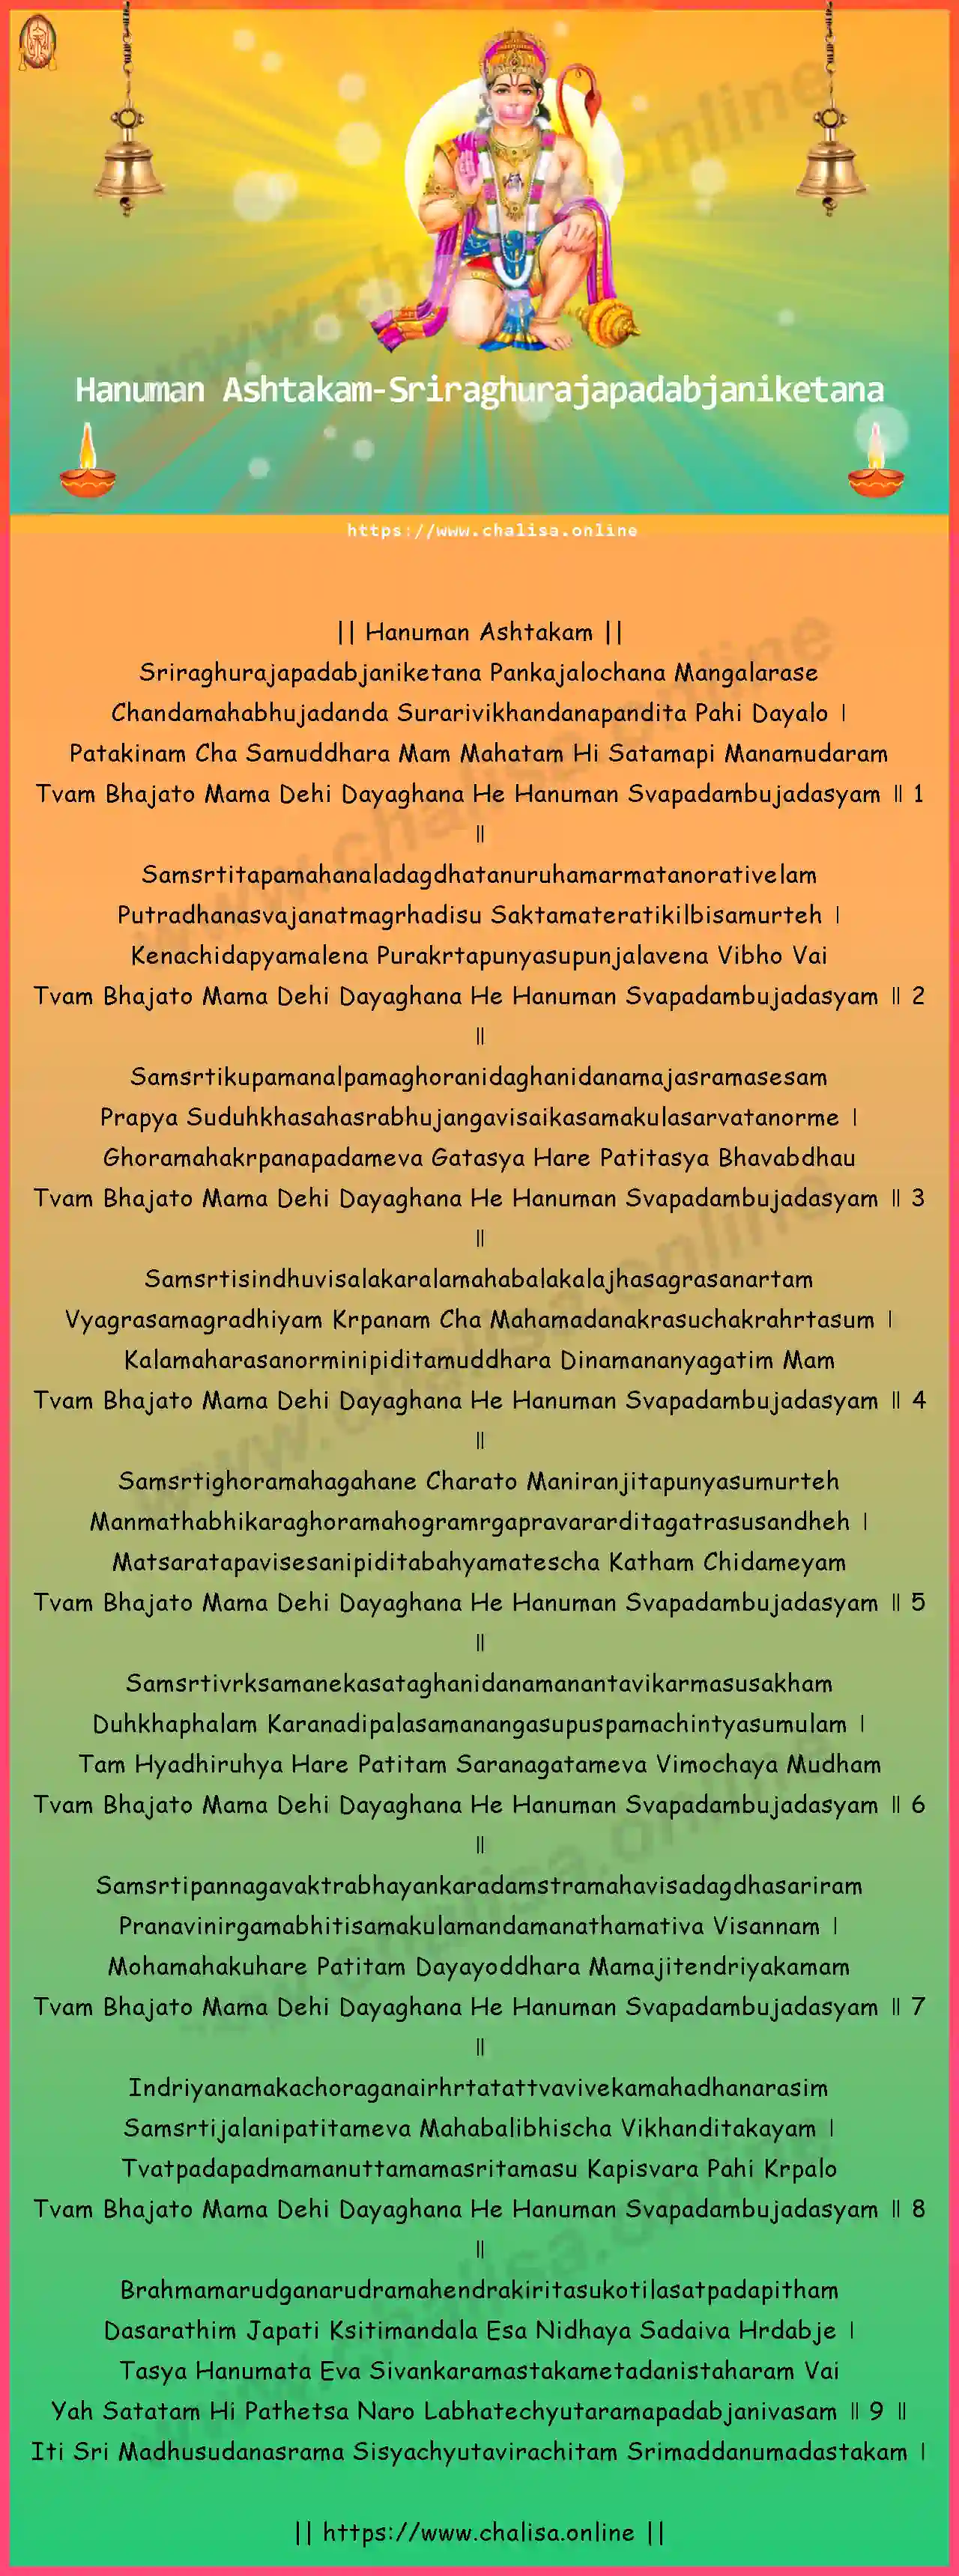 sriraghurajapadabjaniketana-hanuman-ashtakam-english-english-lyrics-download